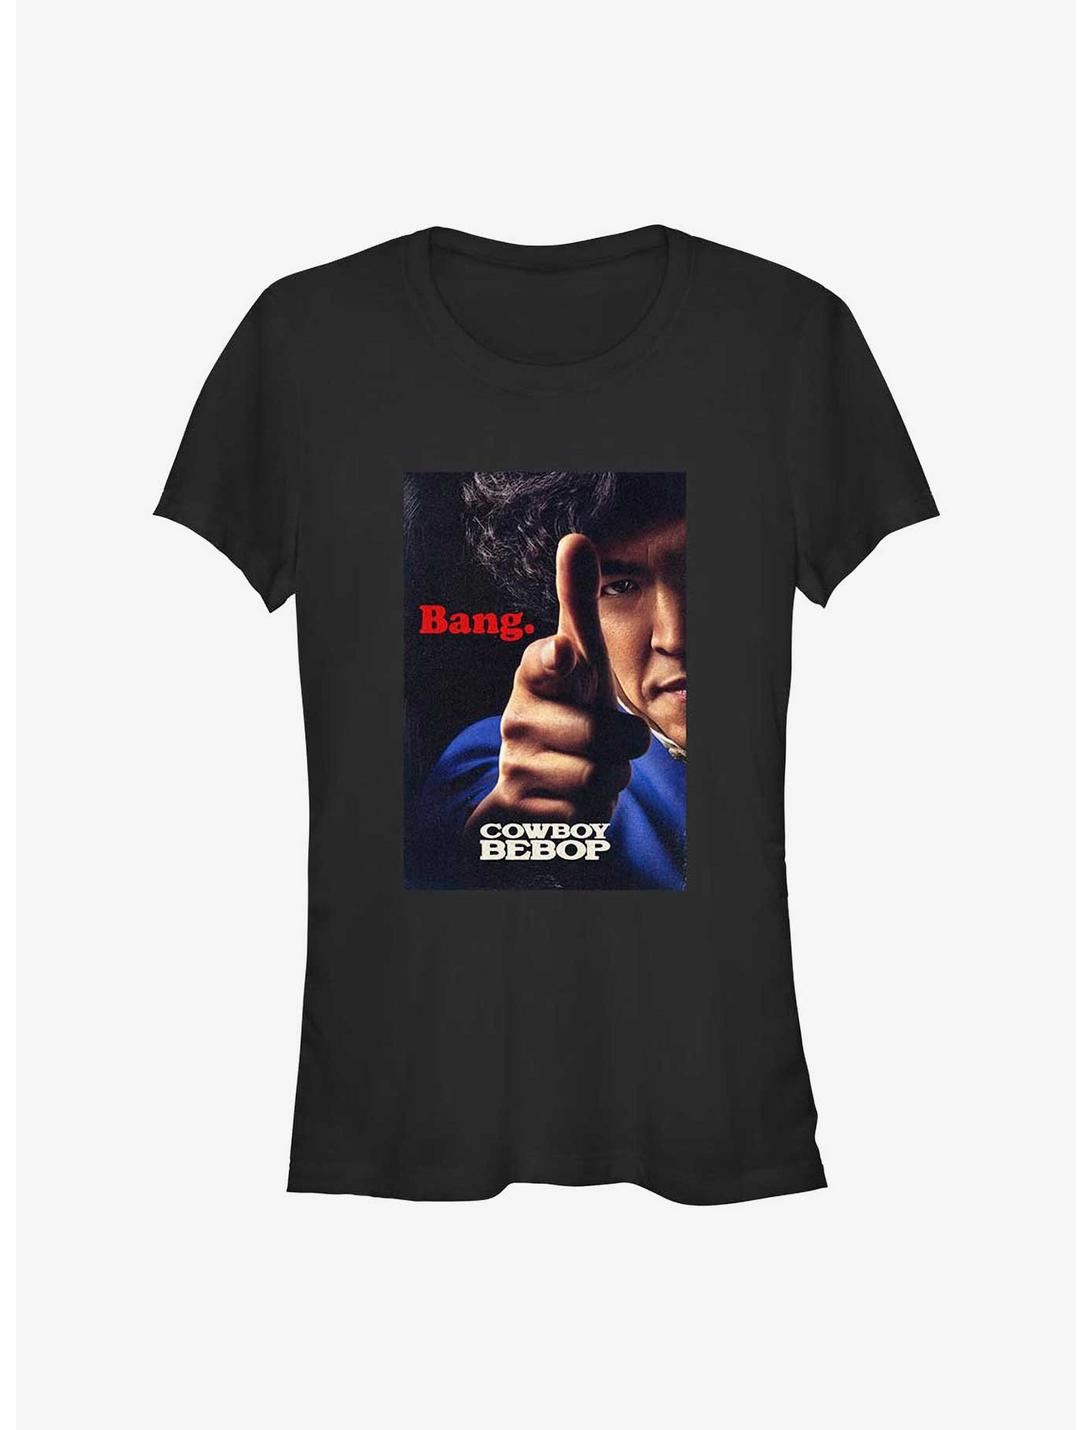 Cowboy Bebop Spike Bang Poster Girl's T-Shirt, BLACK, hi-res